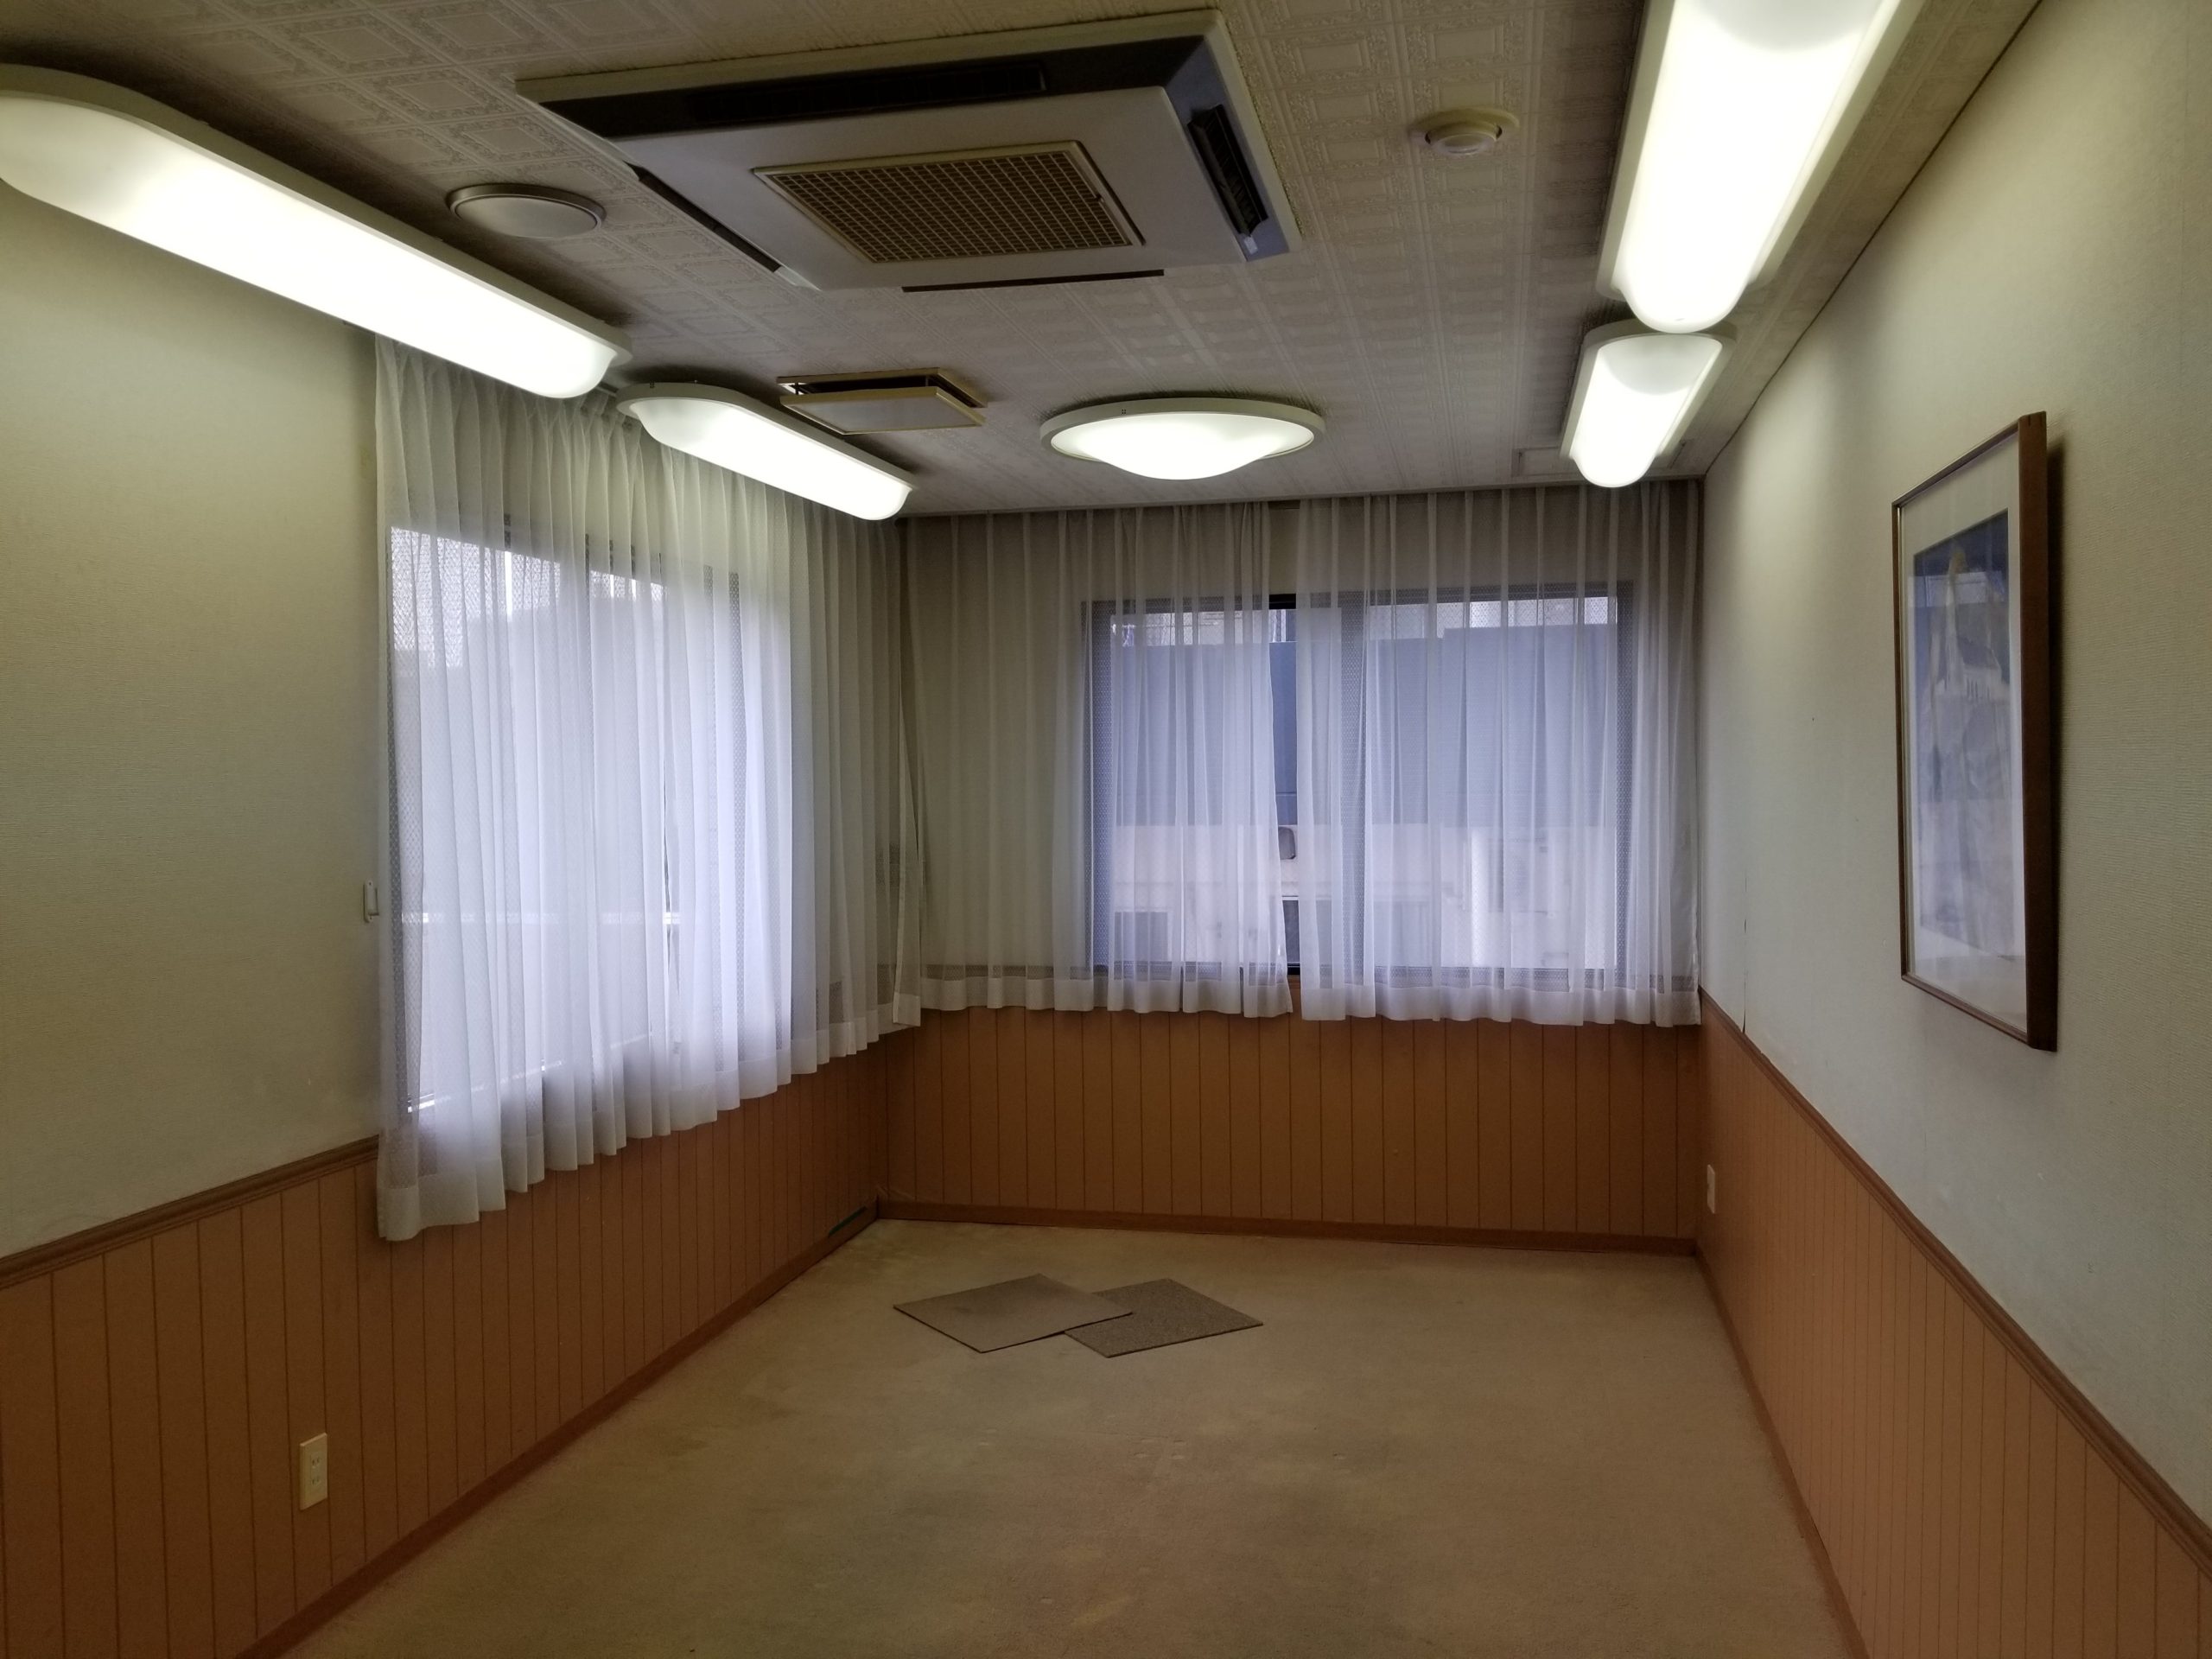 長崎市でホテルの会議室の壁紙と床の張替えリフォーム 長崎壁紙 クロス 張替え職人 壁紙クロス張替はお任せ下さい